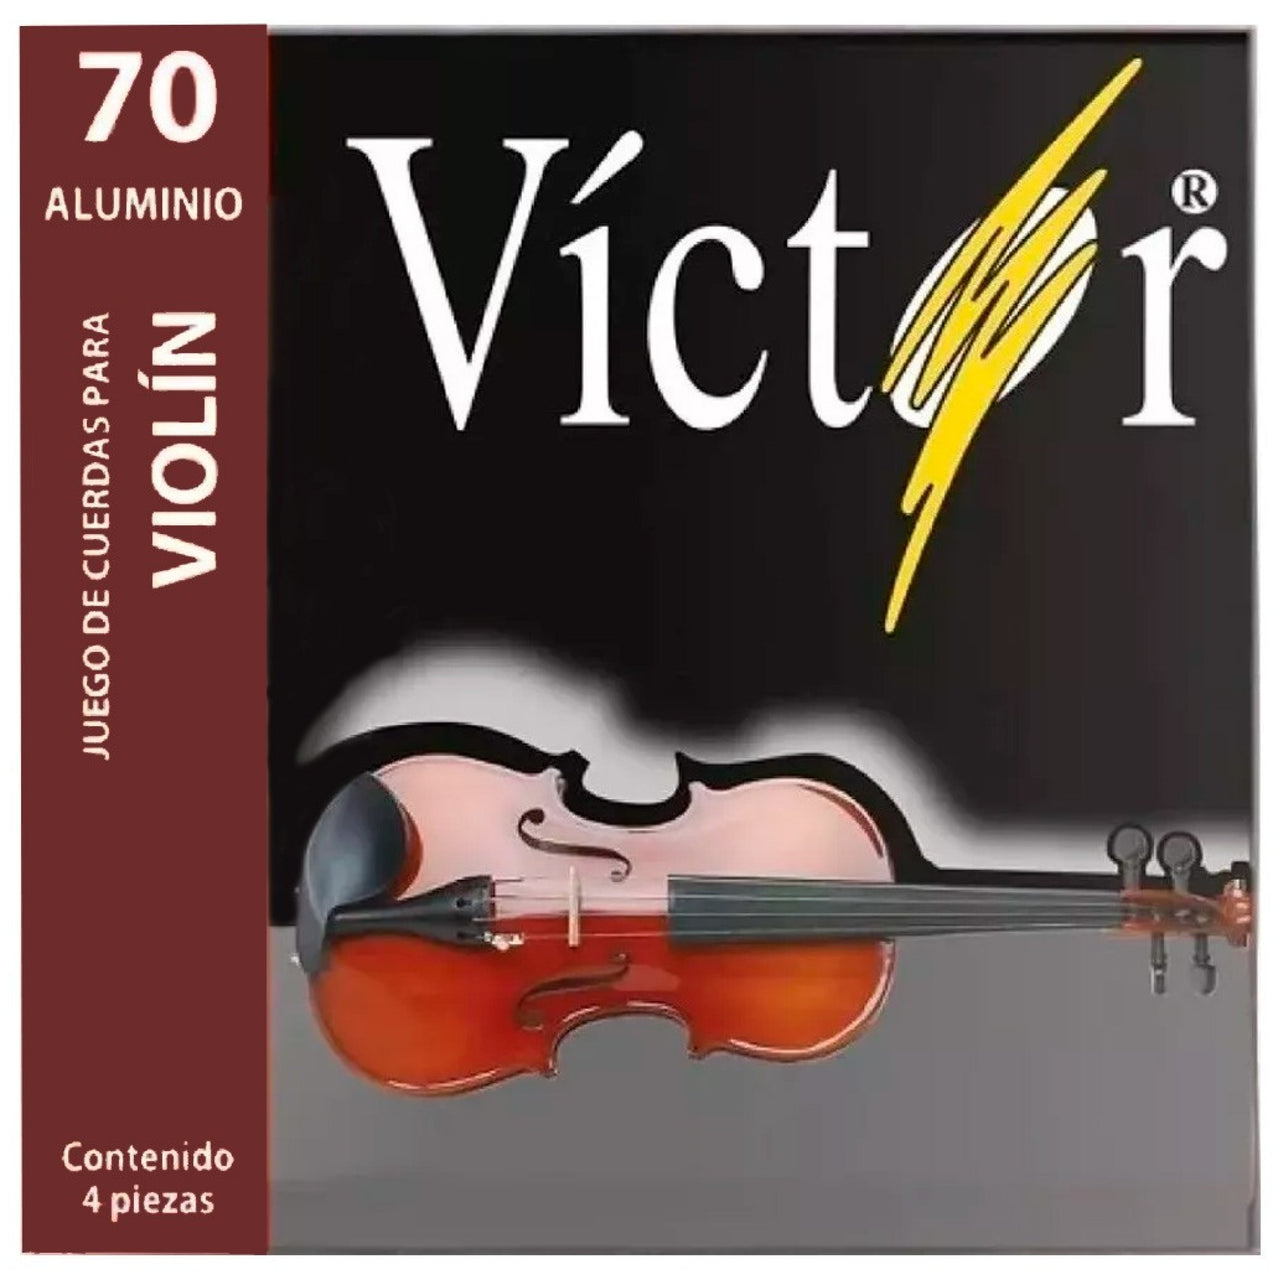 Encordadura Victor Para Violin Acero, 70